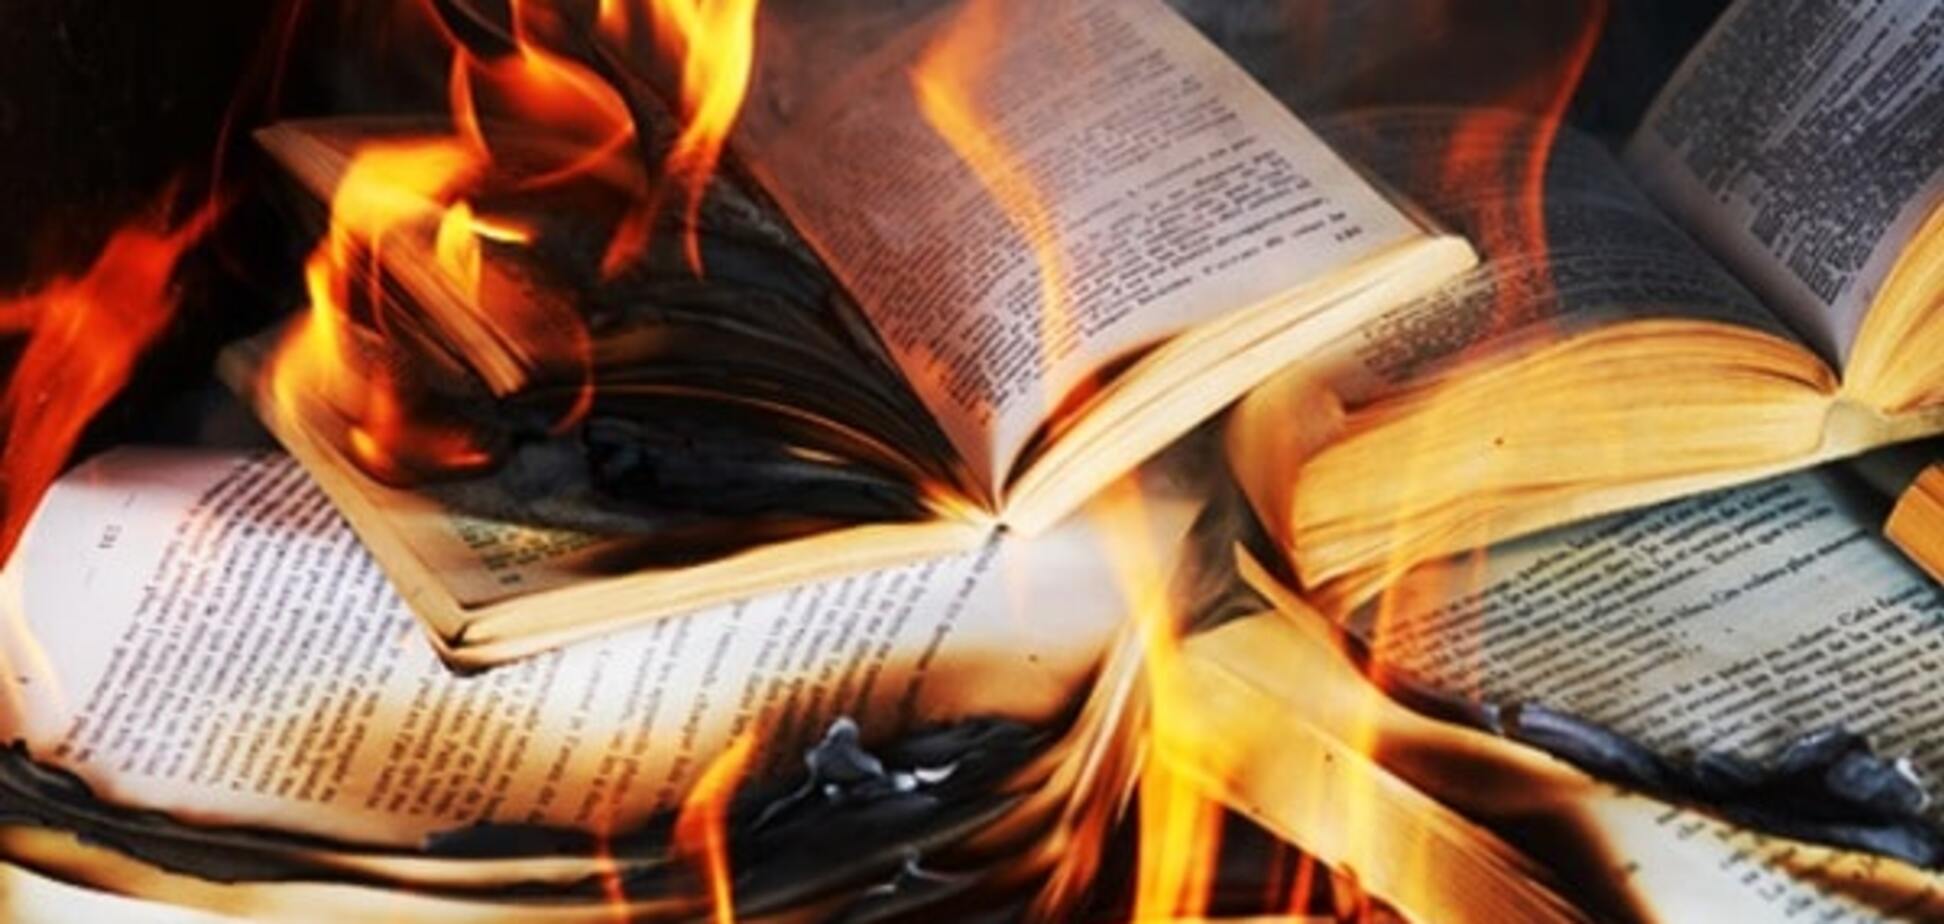 Гуси и мандарины не актуальны: в России сожгли книги, изданные при поддержке Фонда Сороса 